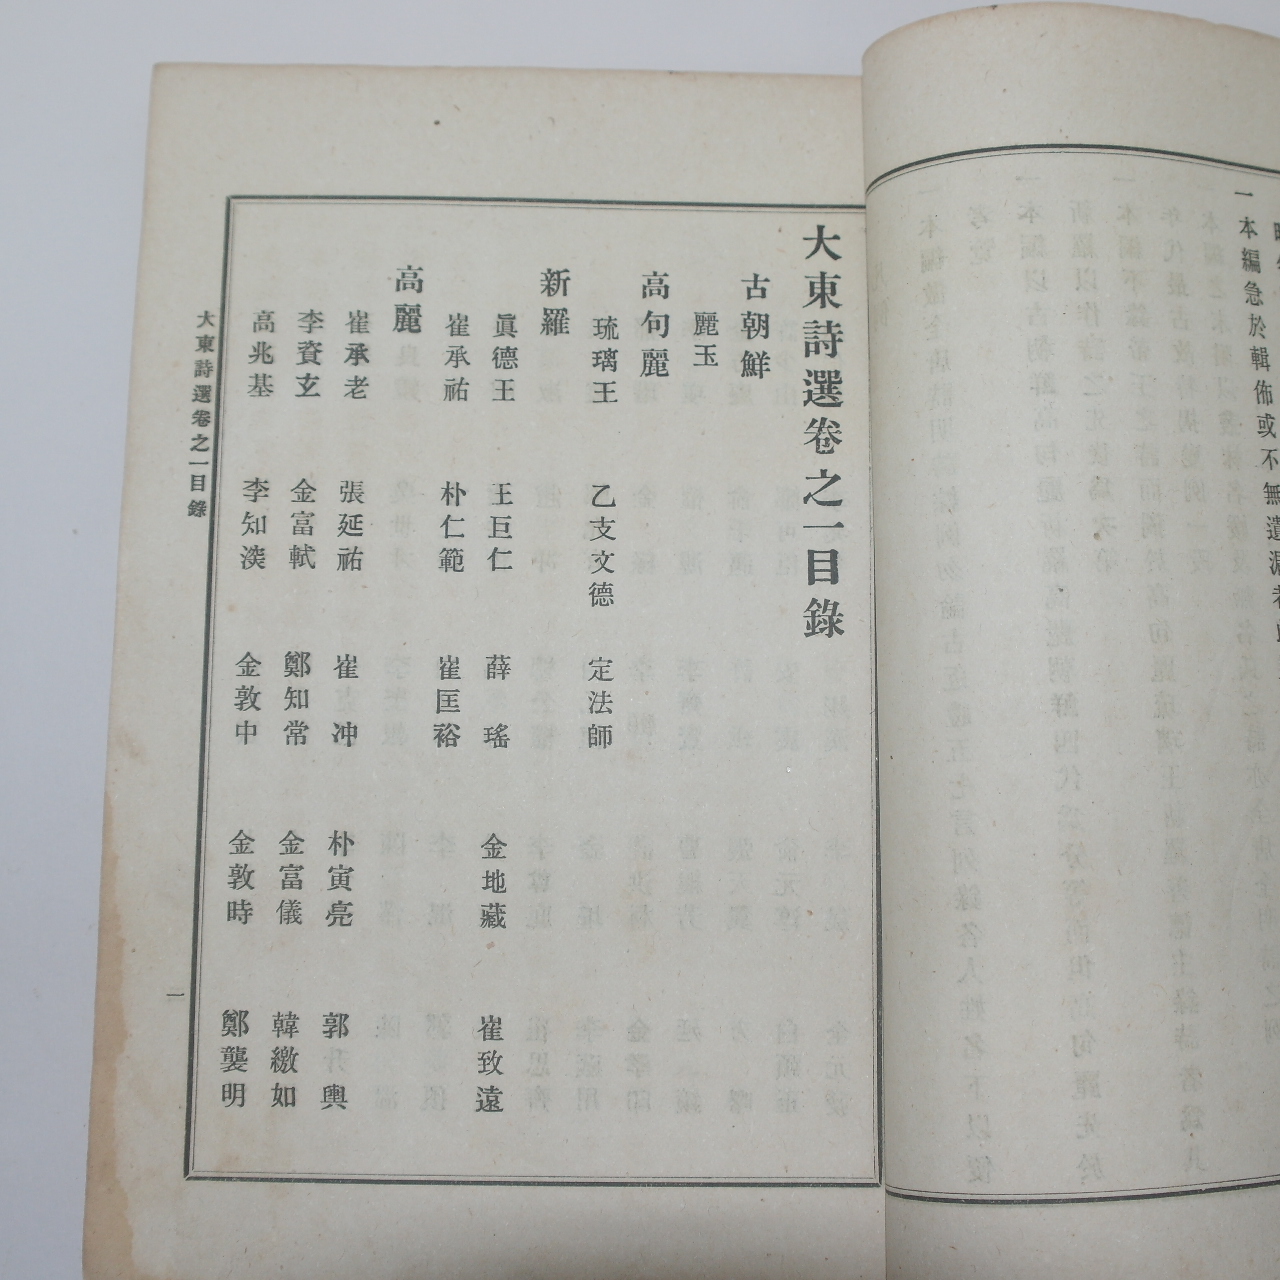 1918년 장지연(張志淵)編 대동시선(大東詩選)권1,2  1책